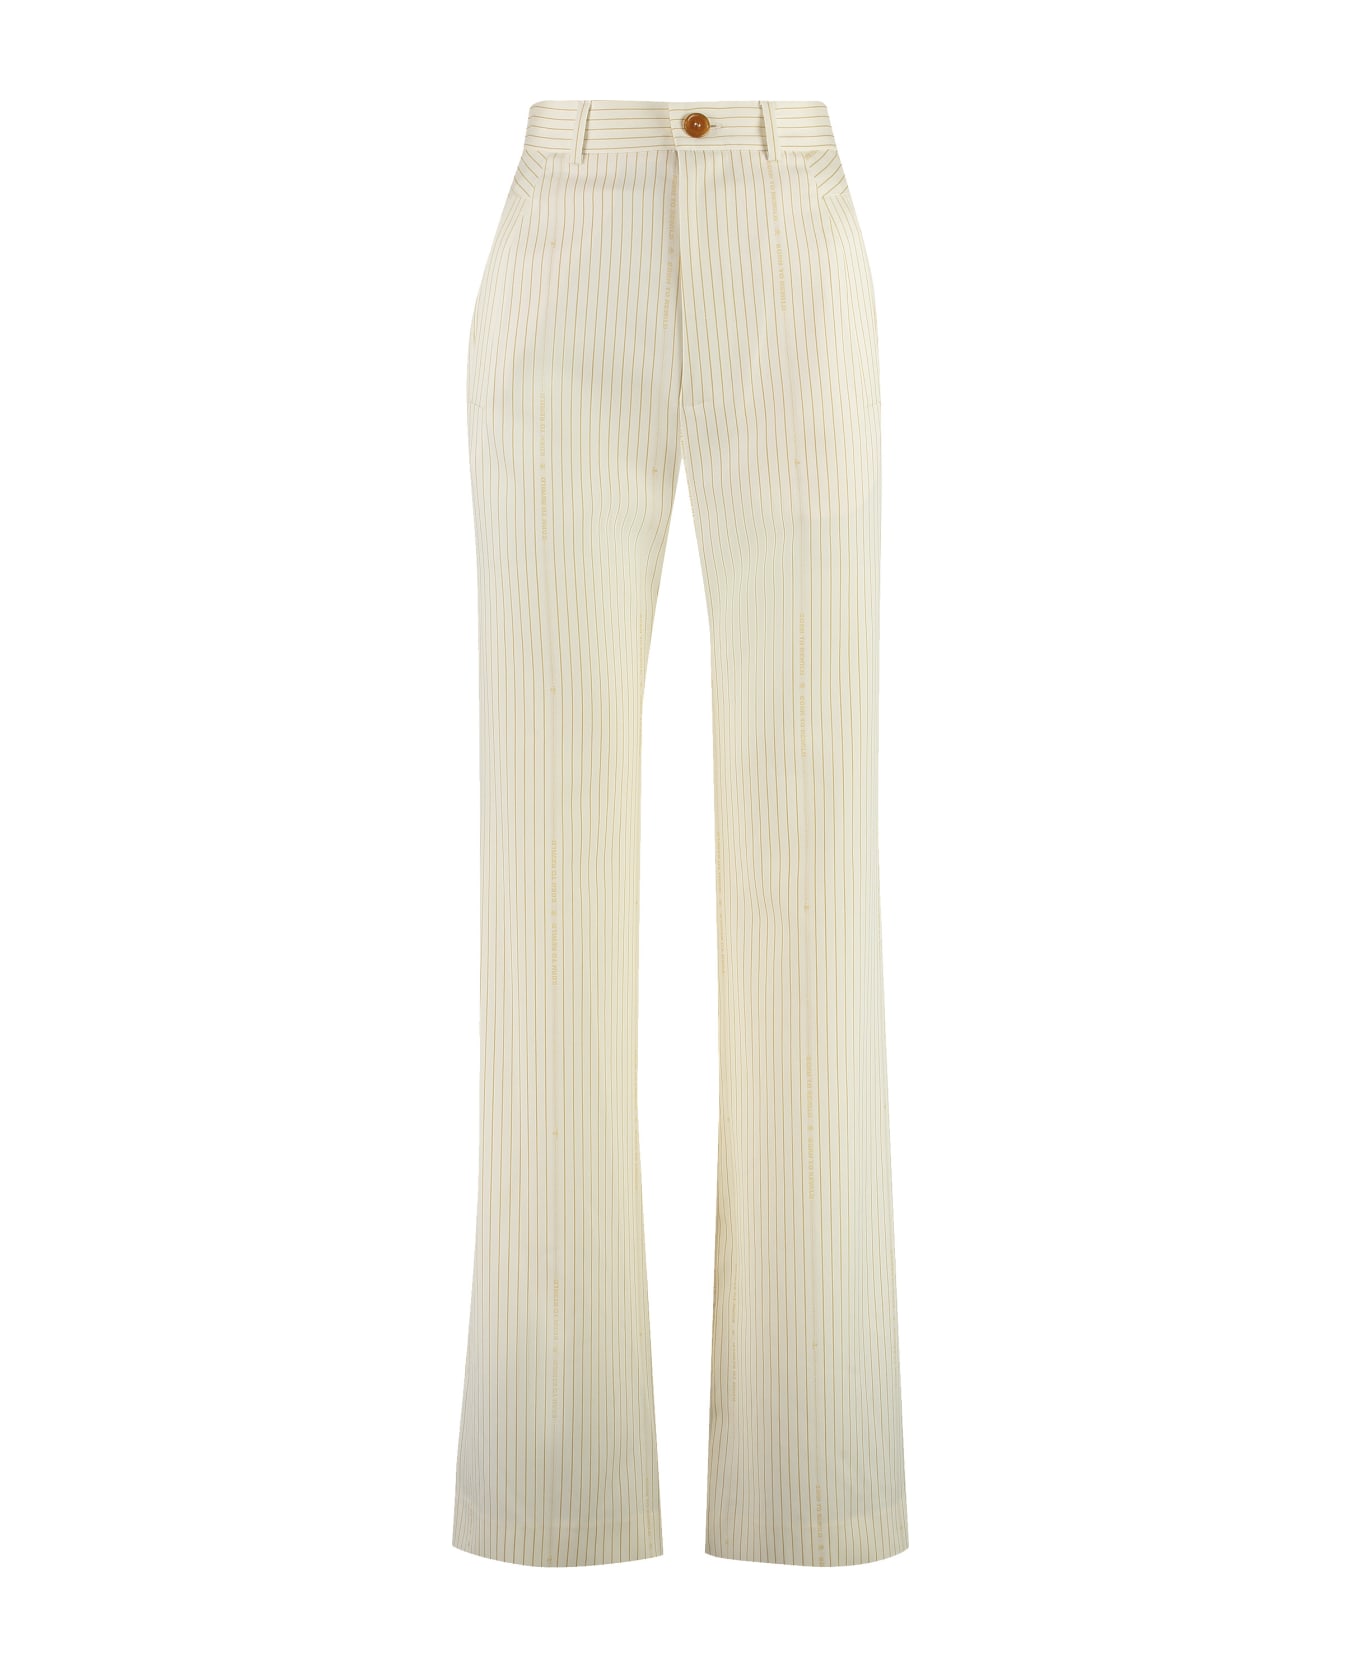 Vivienne Westwood Ray Virgin Wool Trousers - Beige